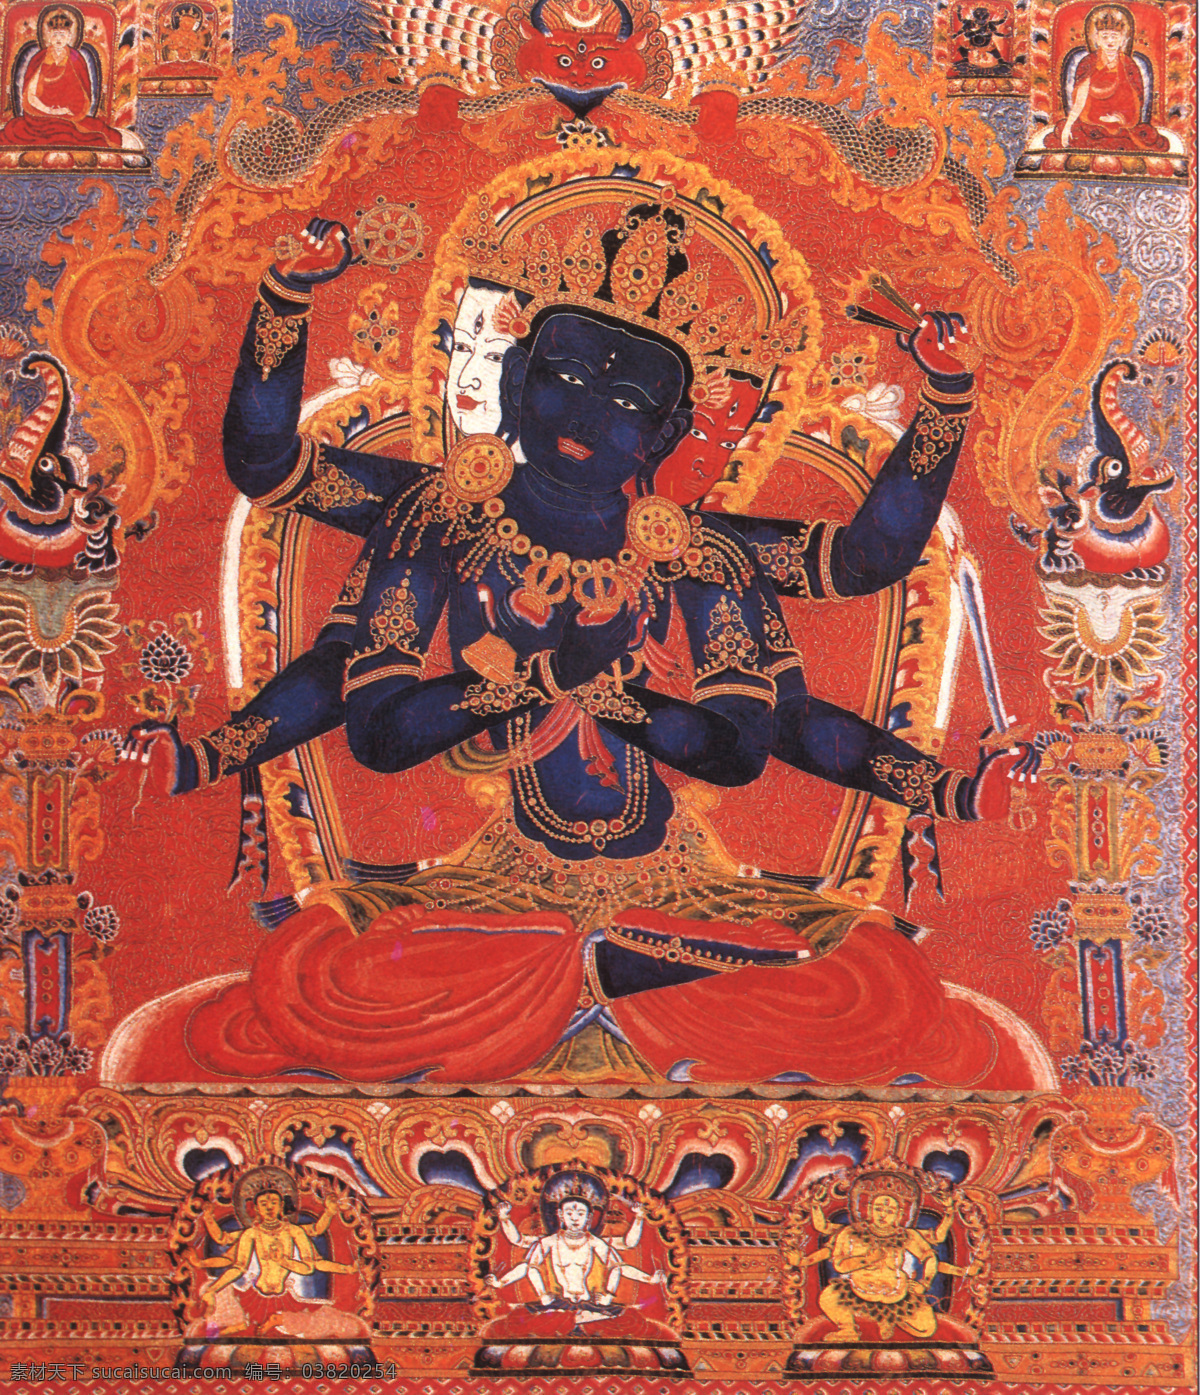 金刚像 佛像 佛教图案 壁挂 三面脸 六臂佛 文化艺术 传统文化 摄影图库